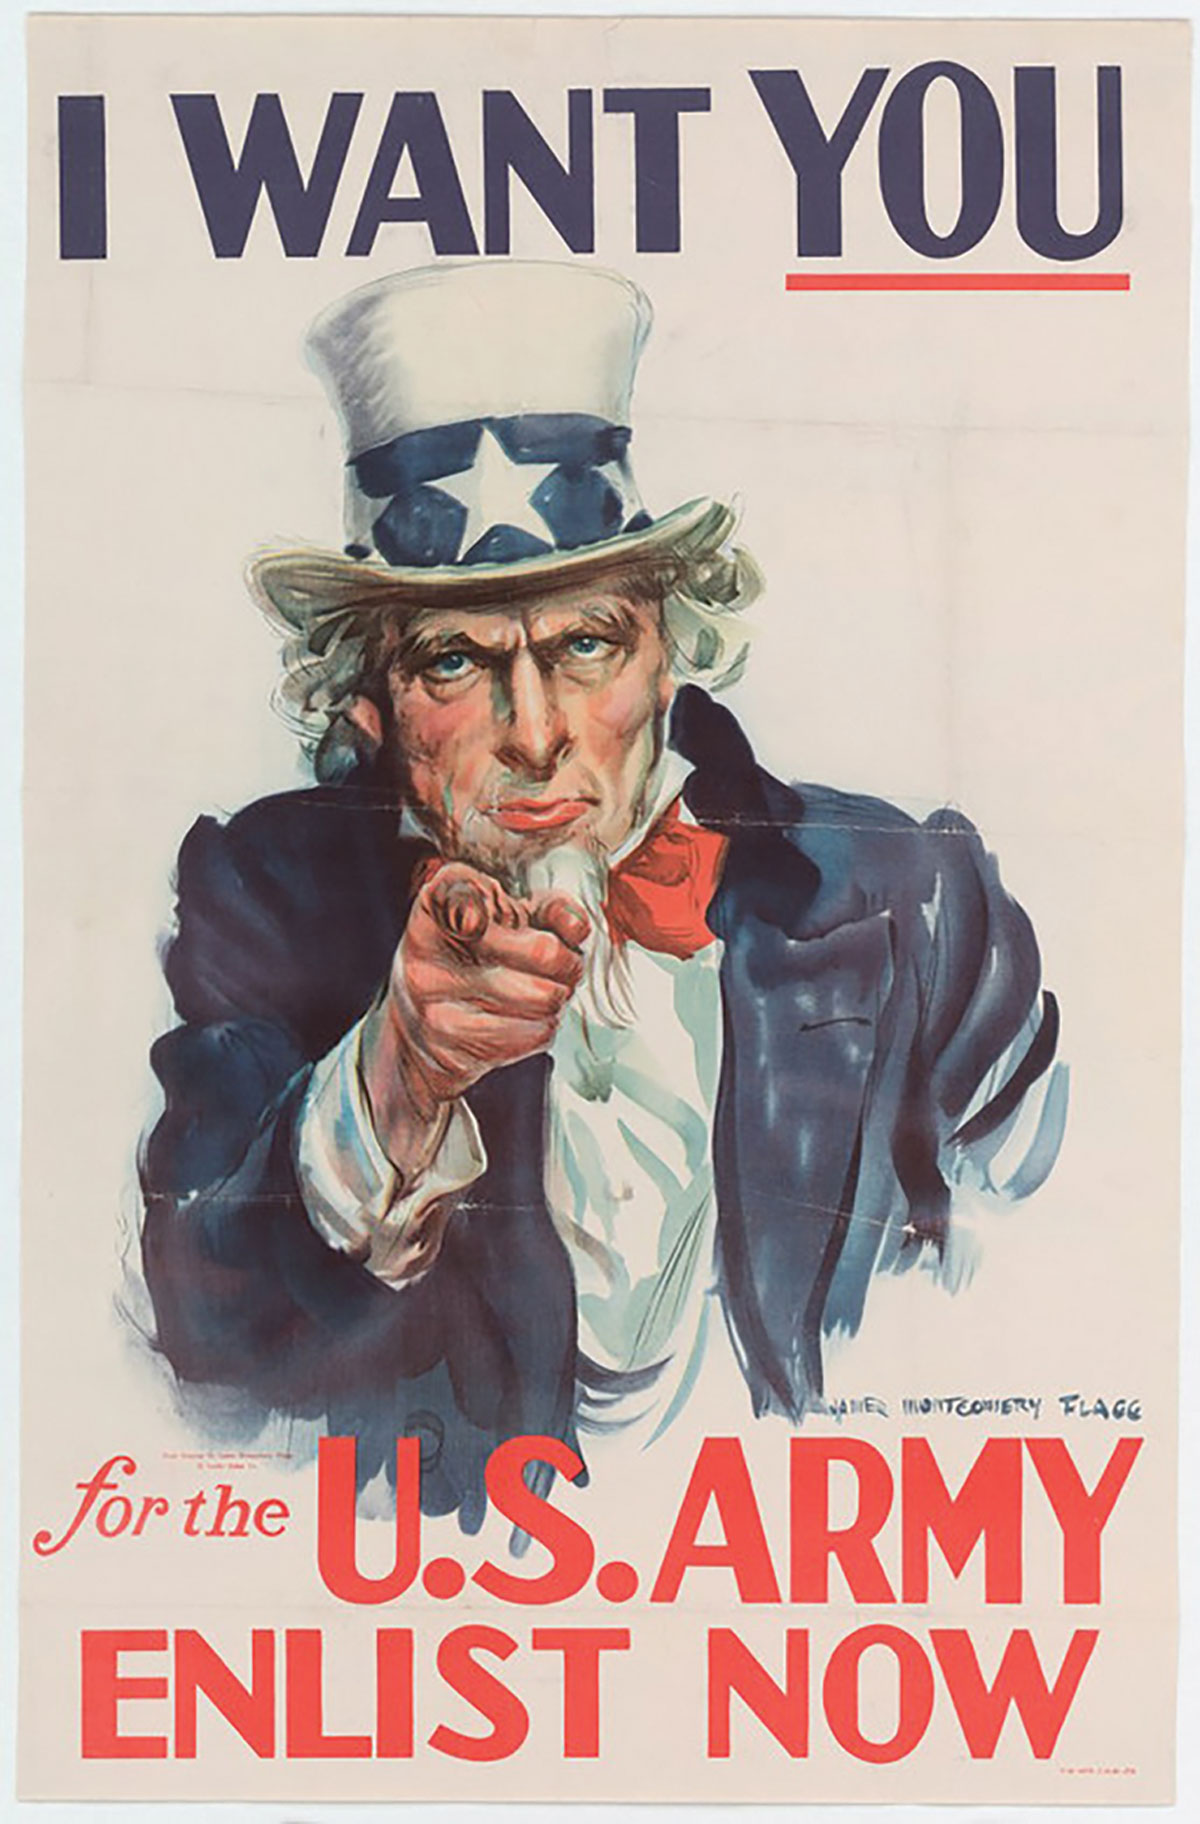 A World War II recruiting poster